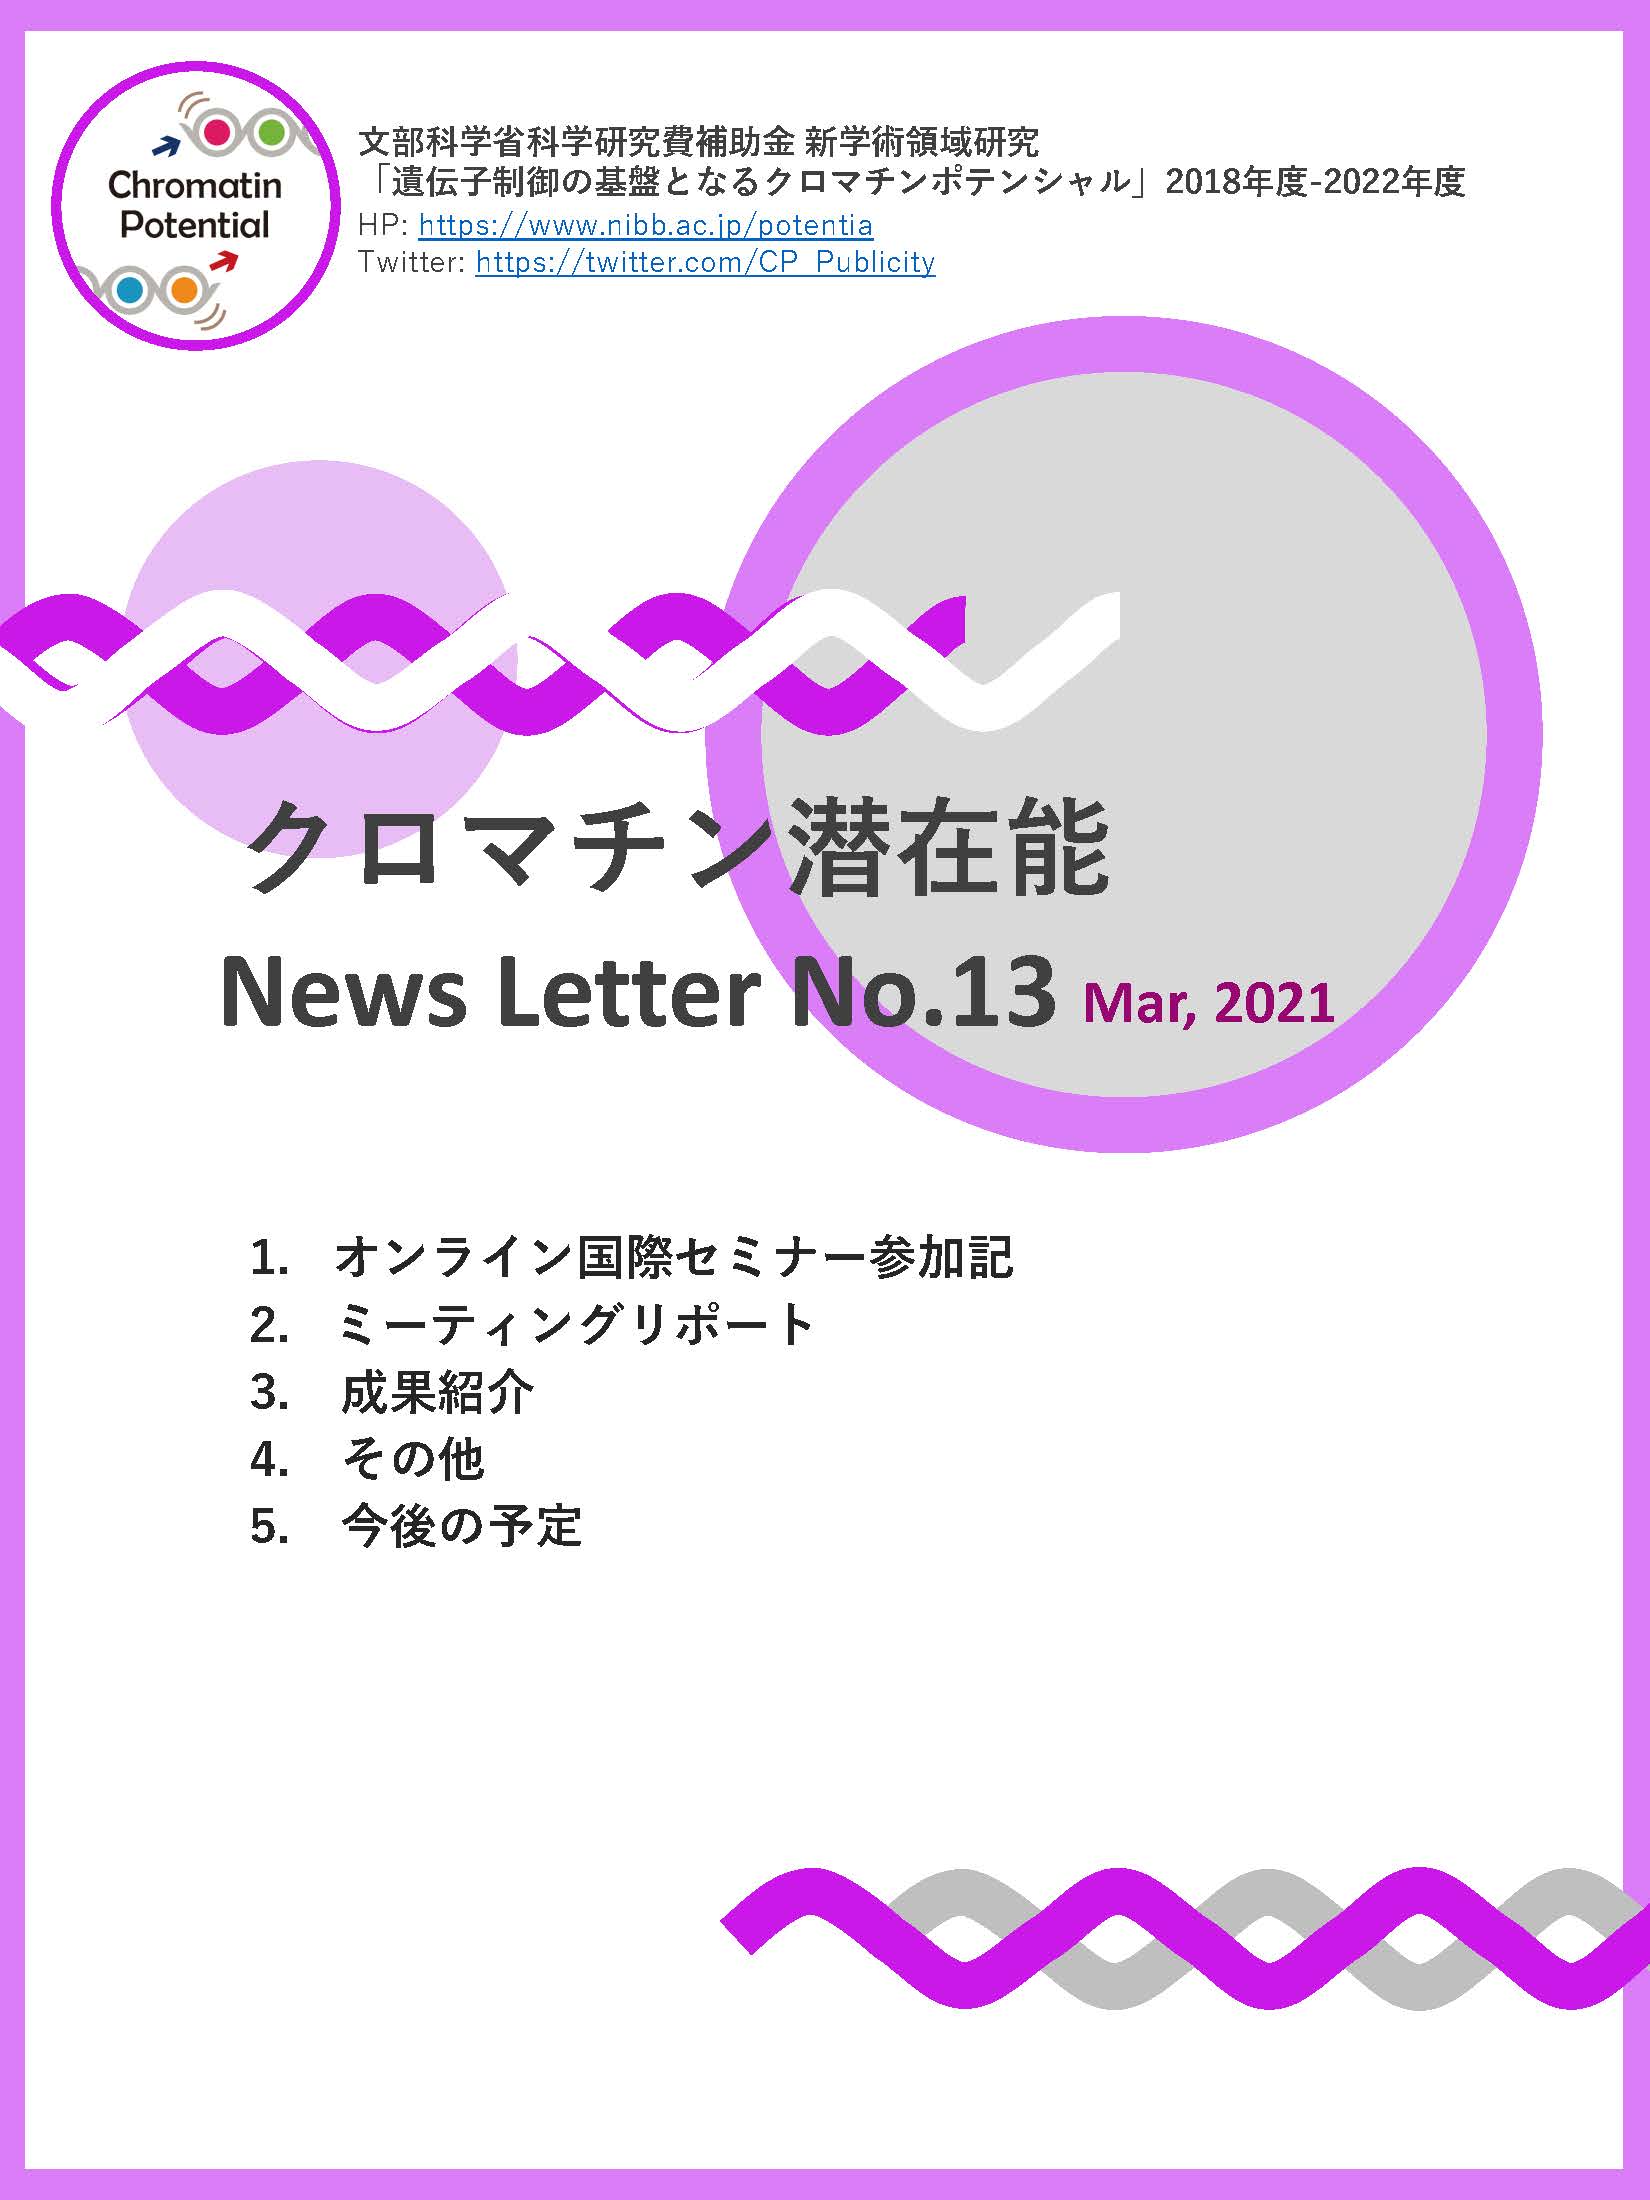 NewsLetter13